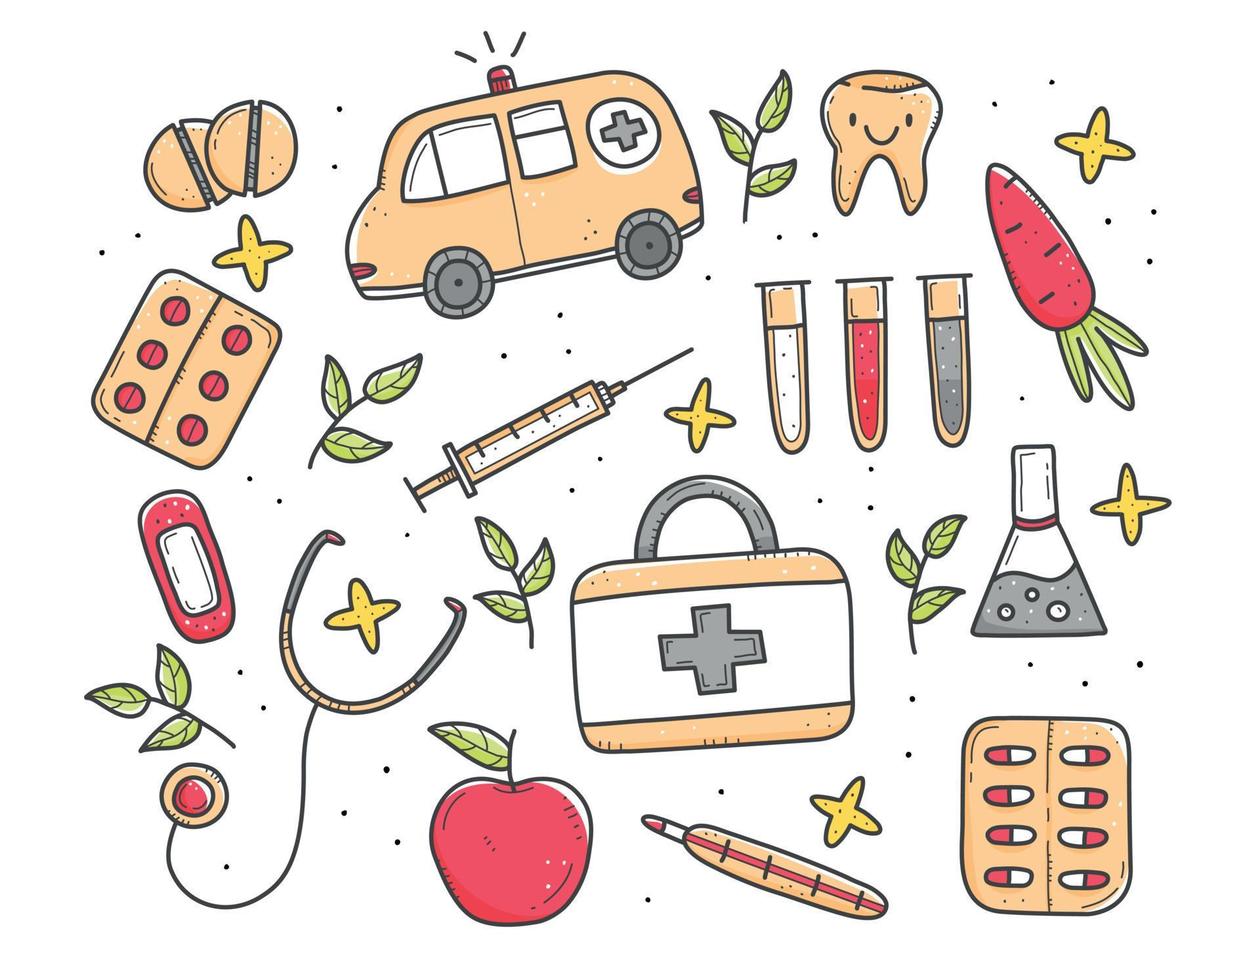 set di articoli medici multicolori in stile doodle, termometro, siringa, pallone, pillole, vitamine, ambulanza. illustrazione di doodle di vettore. oggetti isolati su sfondo bianco. vettore